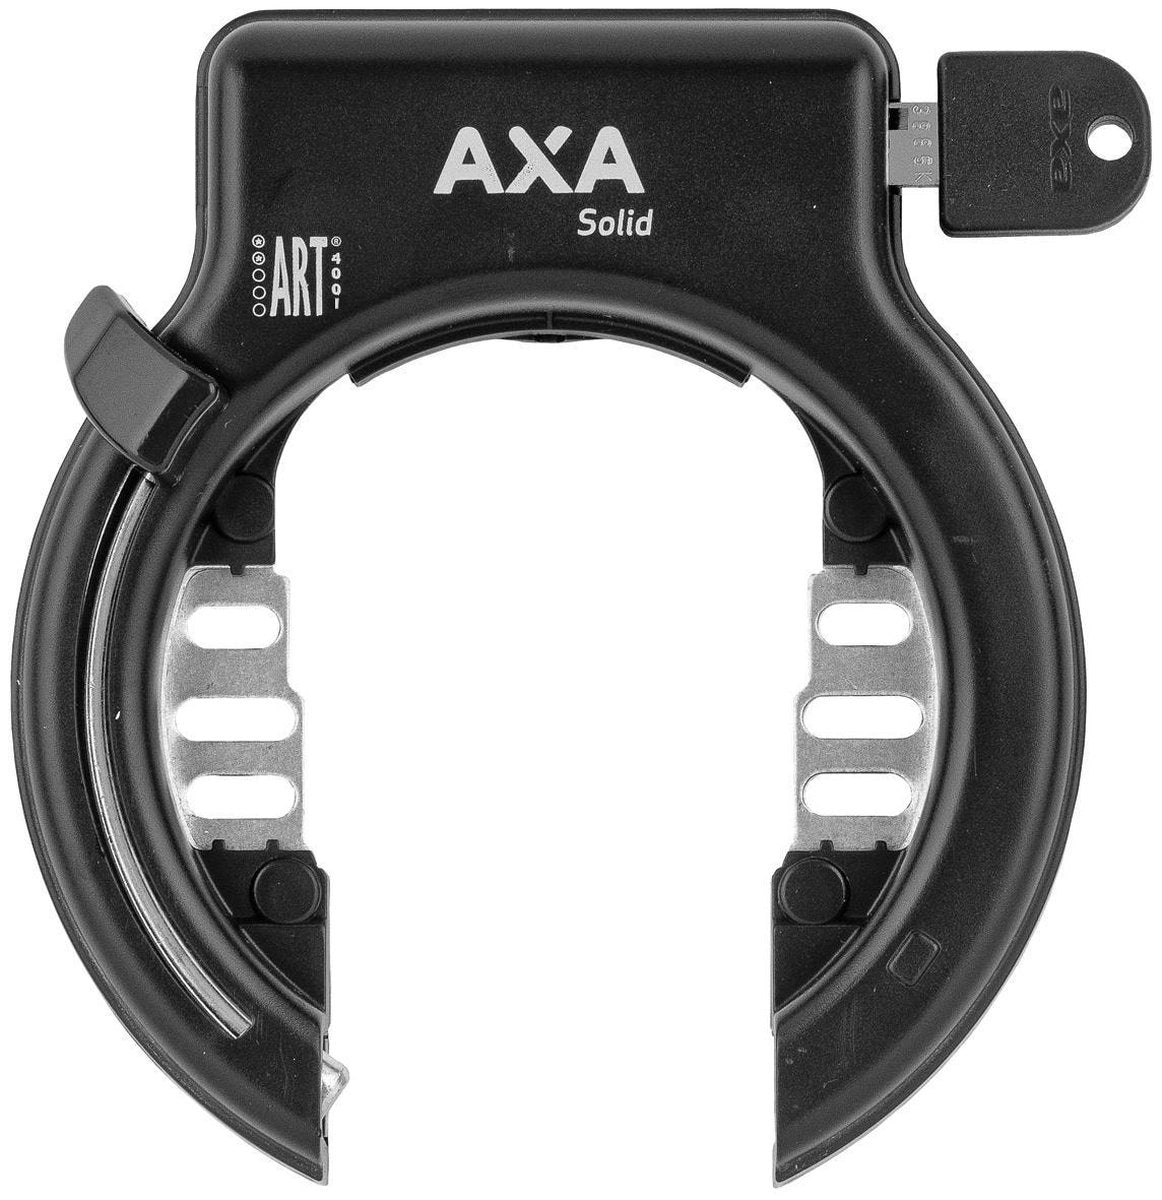 fiets slot - Axa Solid ringslot ART**